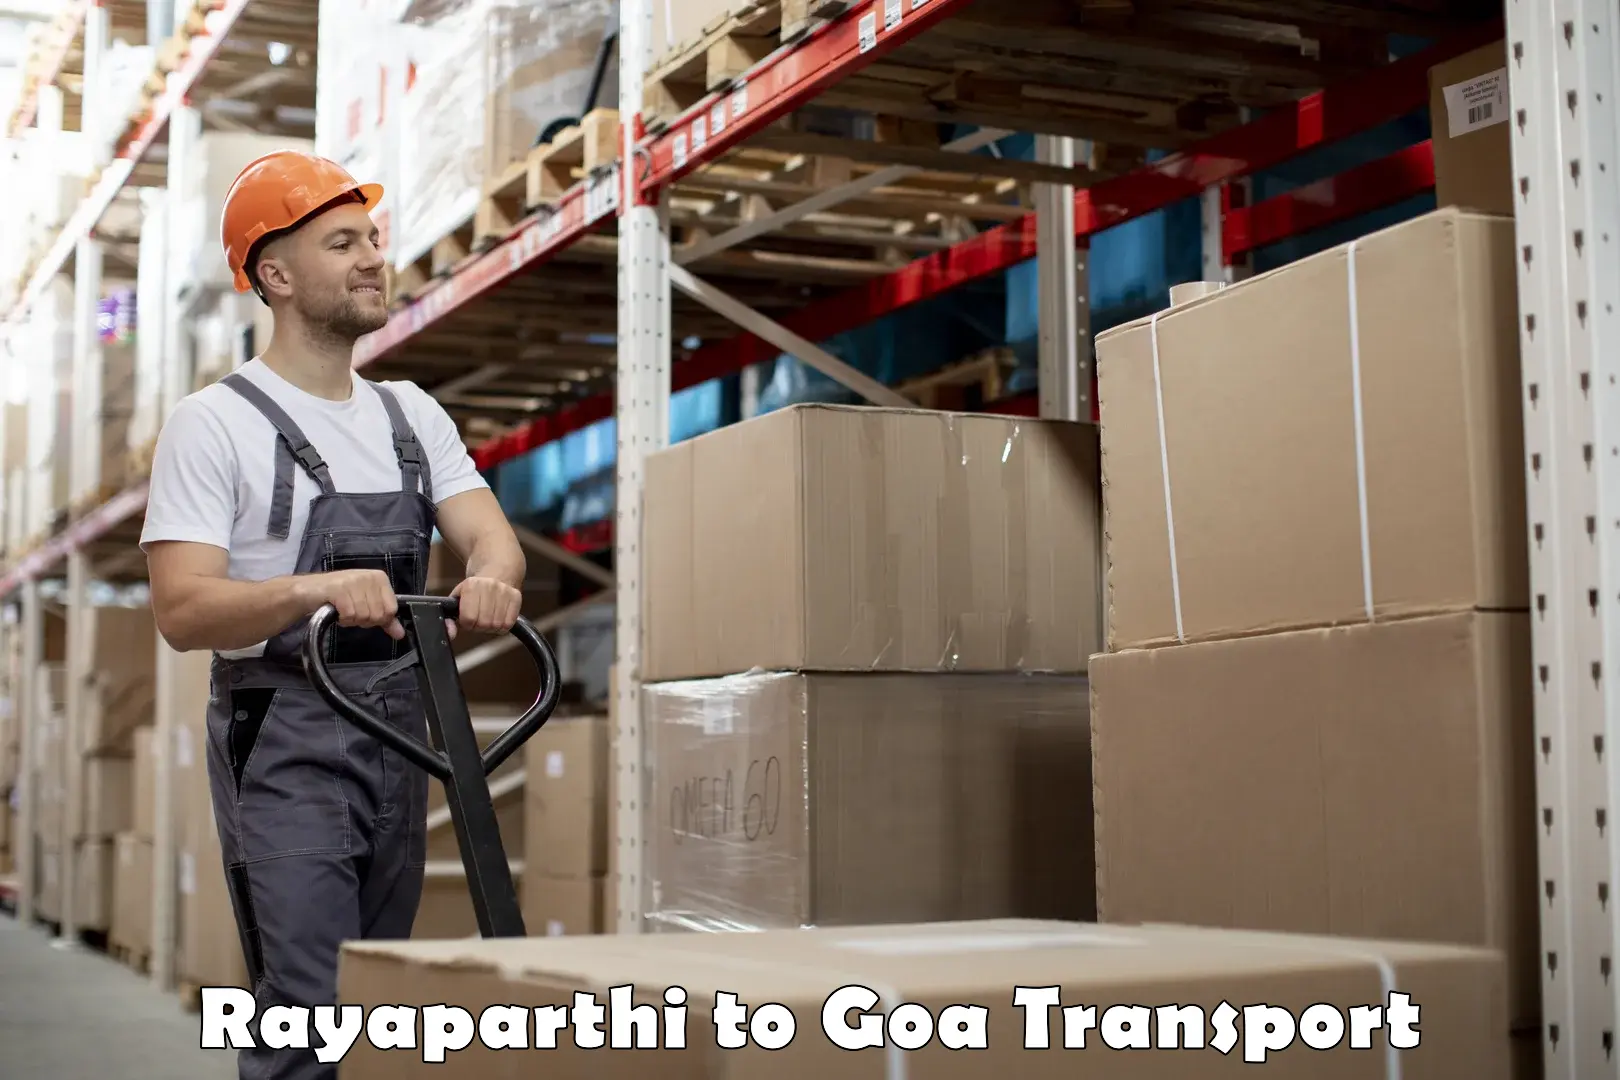 Pick up transport service Rayaparthi to Margao